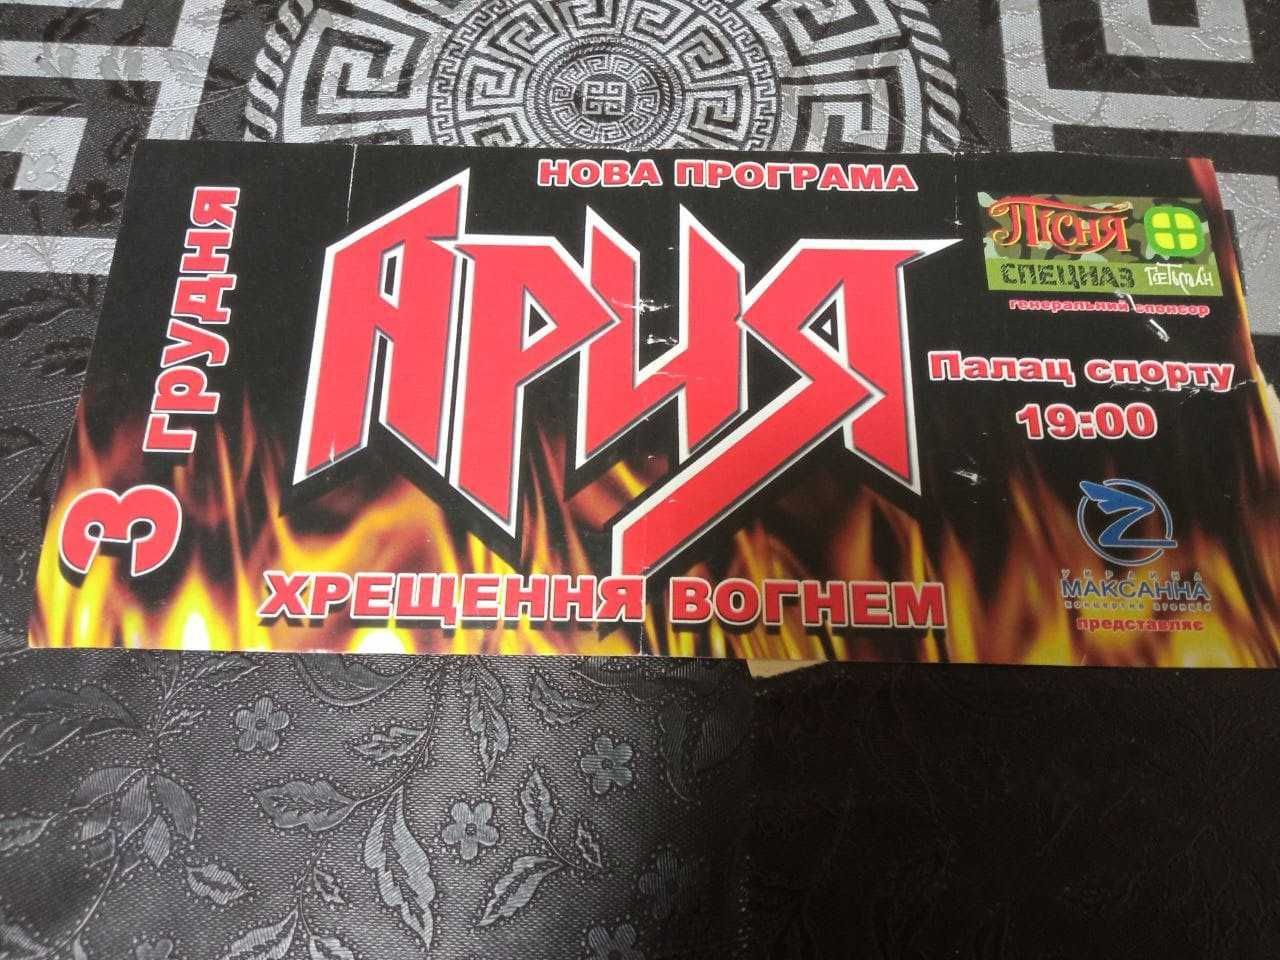 Билеты на рок-концерты Киева ДДТ, Ария, Blind Guardian, Чайка